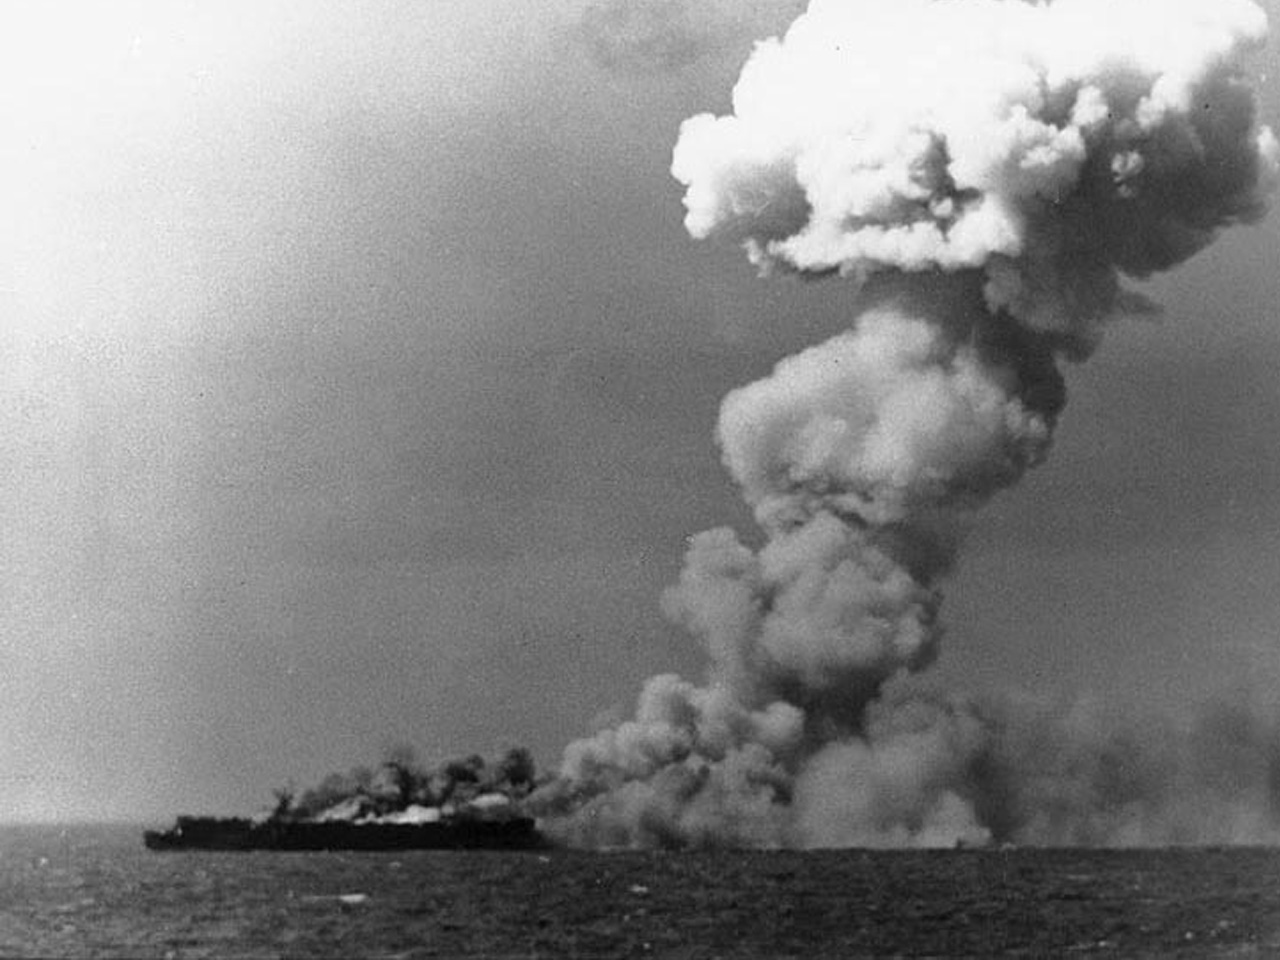 ยุทธนาวีที่อ่าวเลย์เต (Battle of Leyte Gulf) ยุทธนาวีครั้งใหญ่ที่สุดในสงครามโลกครั้งที่ 2